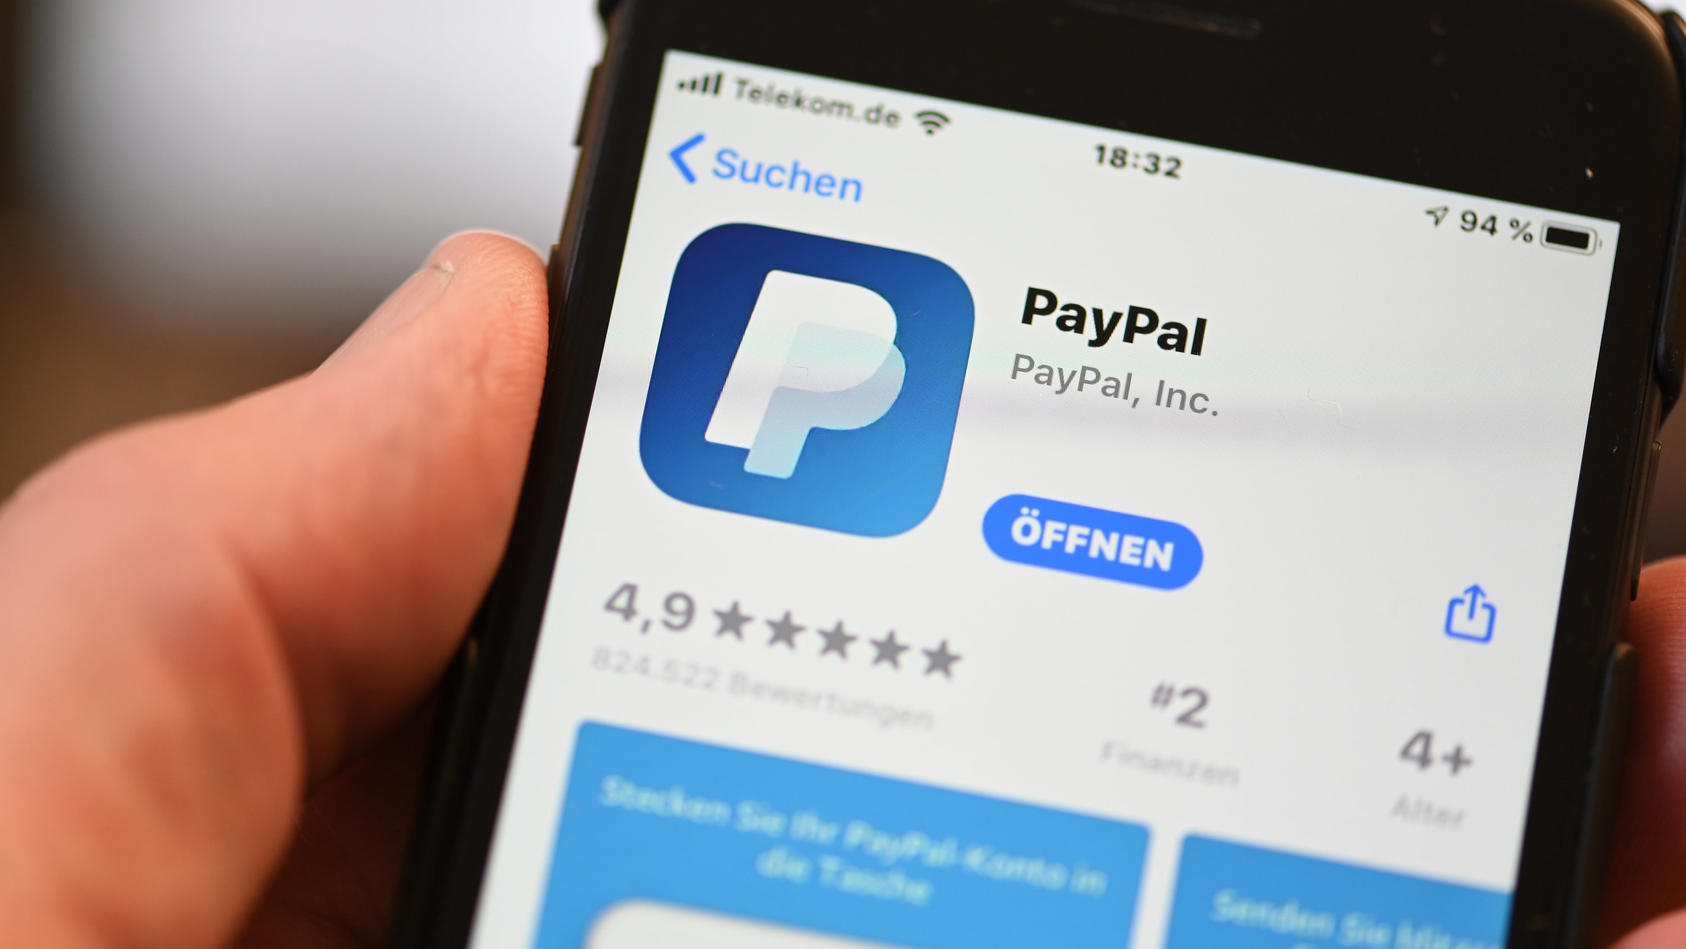 Wer sein PayPal-Konto zu selten nutzt, muss bald eine Strafgebühr zahlen.